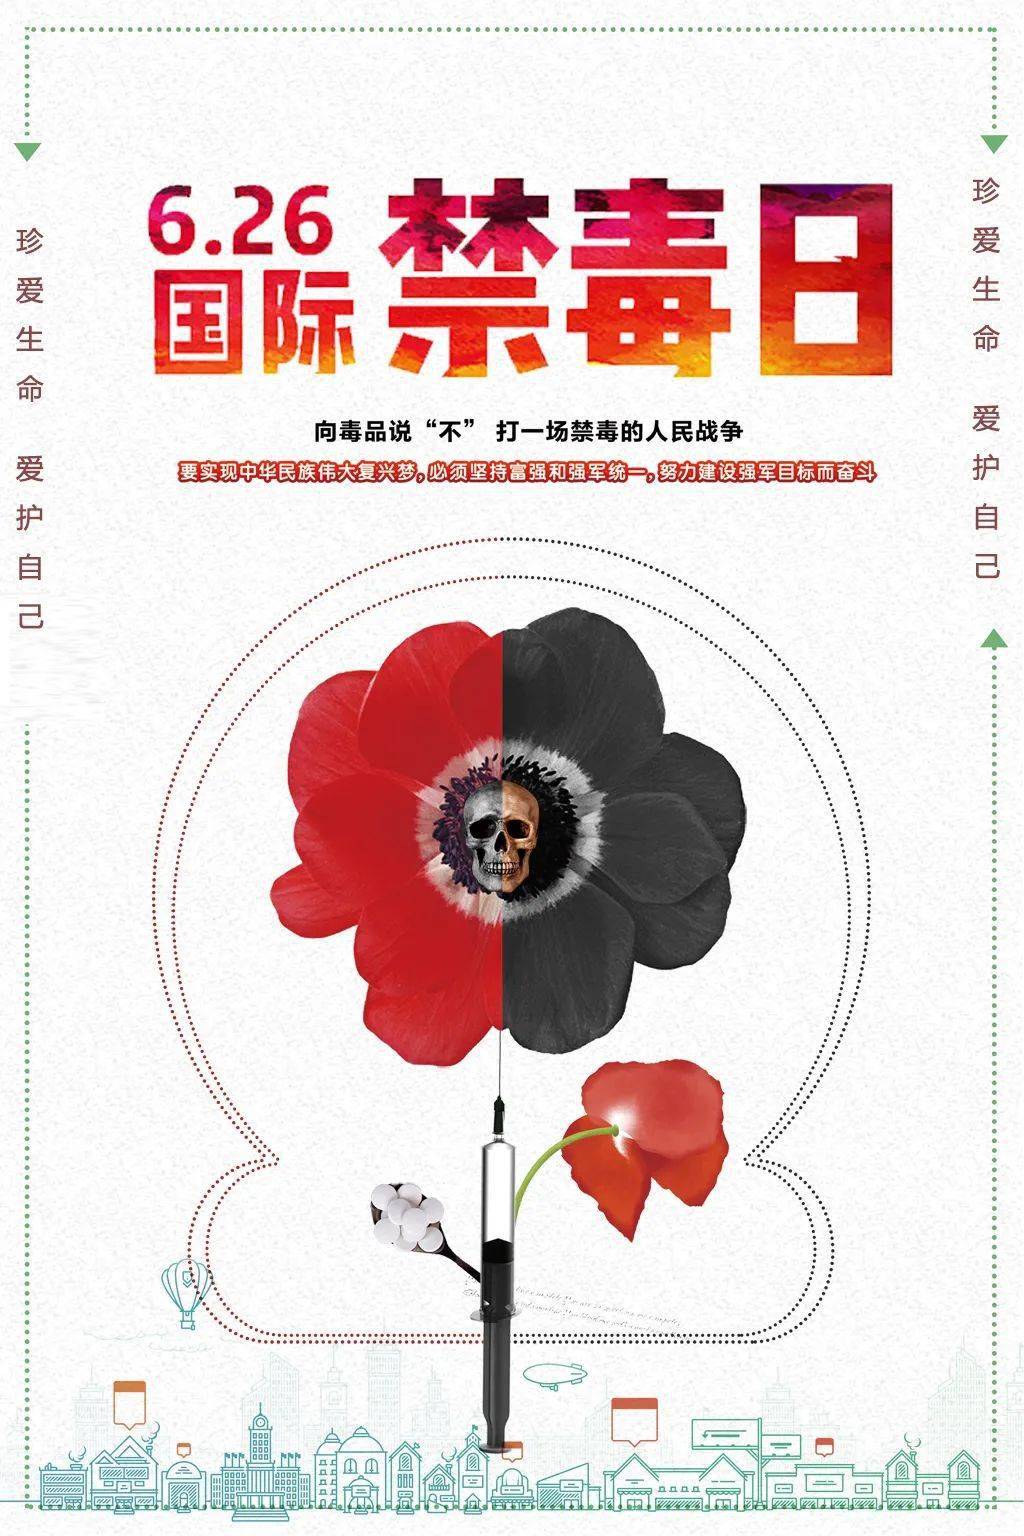 在活动当天,文学院红十字会志愿者在网上发起了禁毒防艾的海报征集